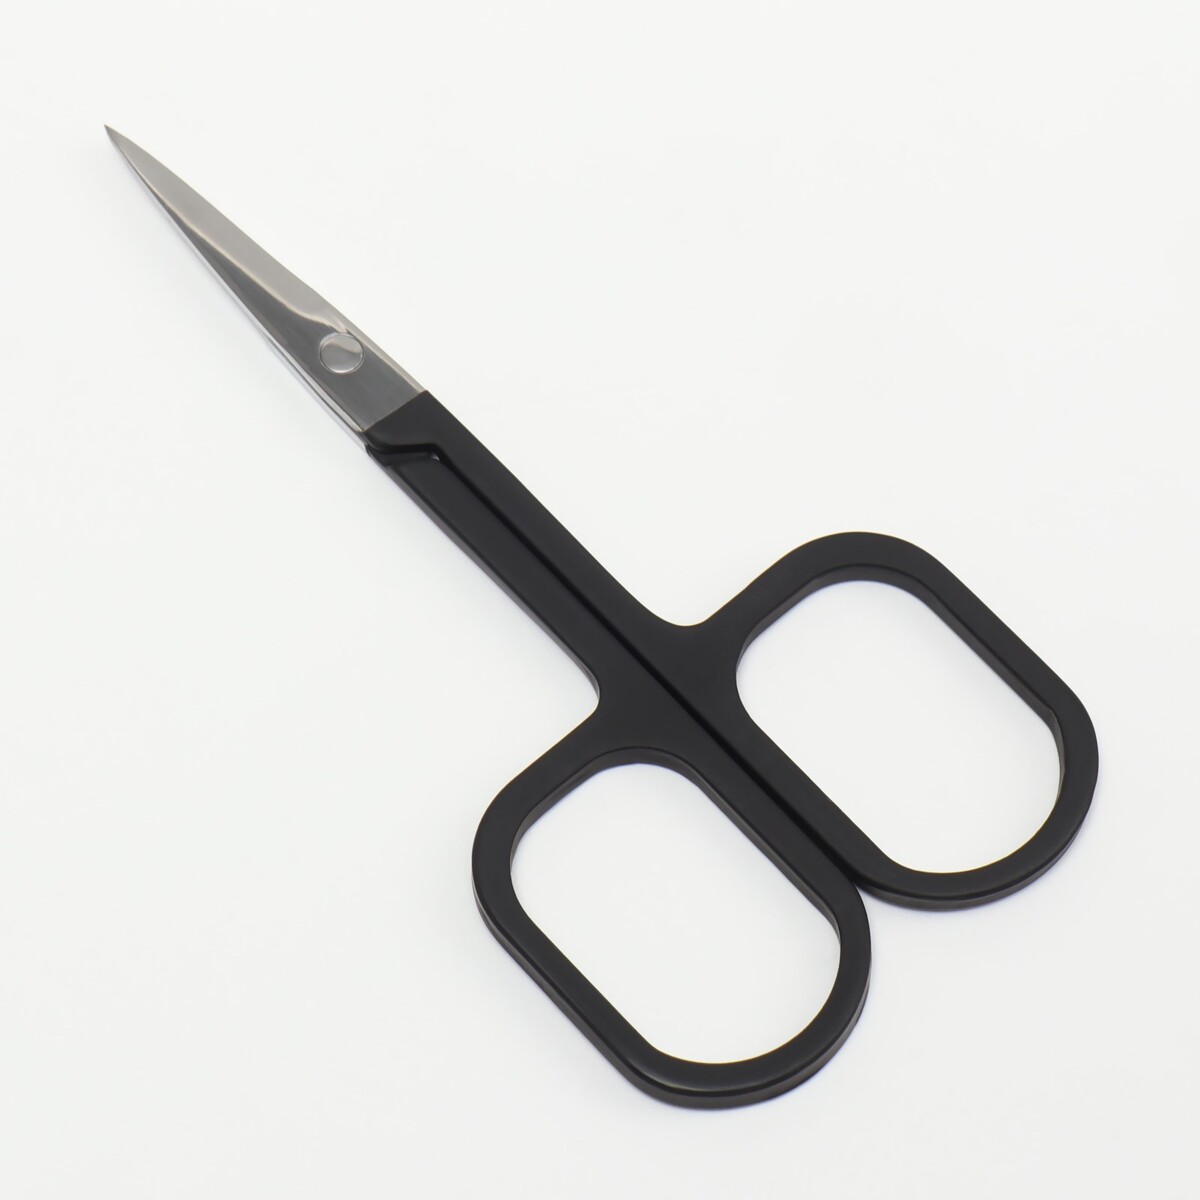 Ножницы маникюрные, узкие, прямые, с прорезиненными ручками, 9 см, цвет серебристый/черный ножницы маникюрные прямые узкие 10 5 см серебристый